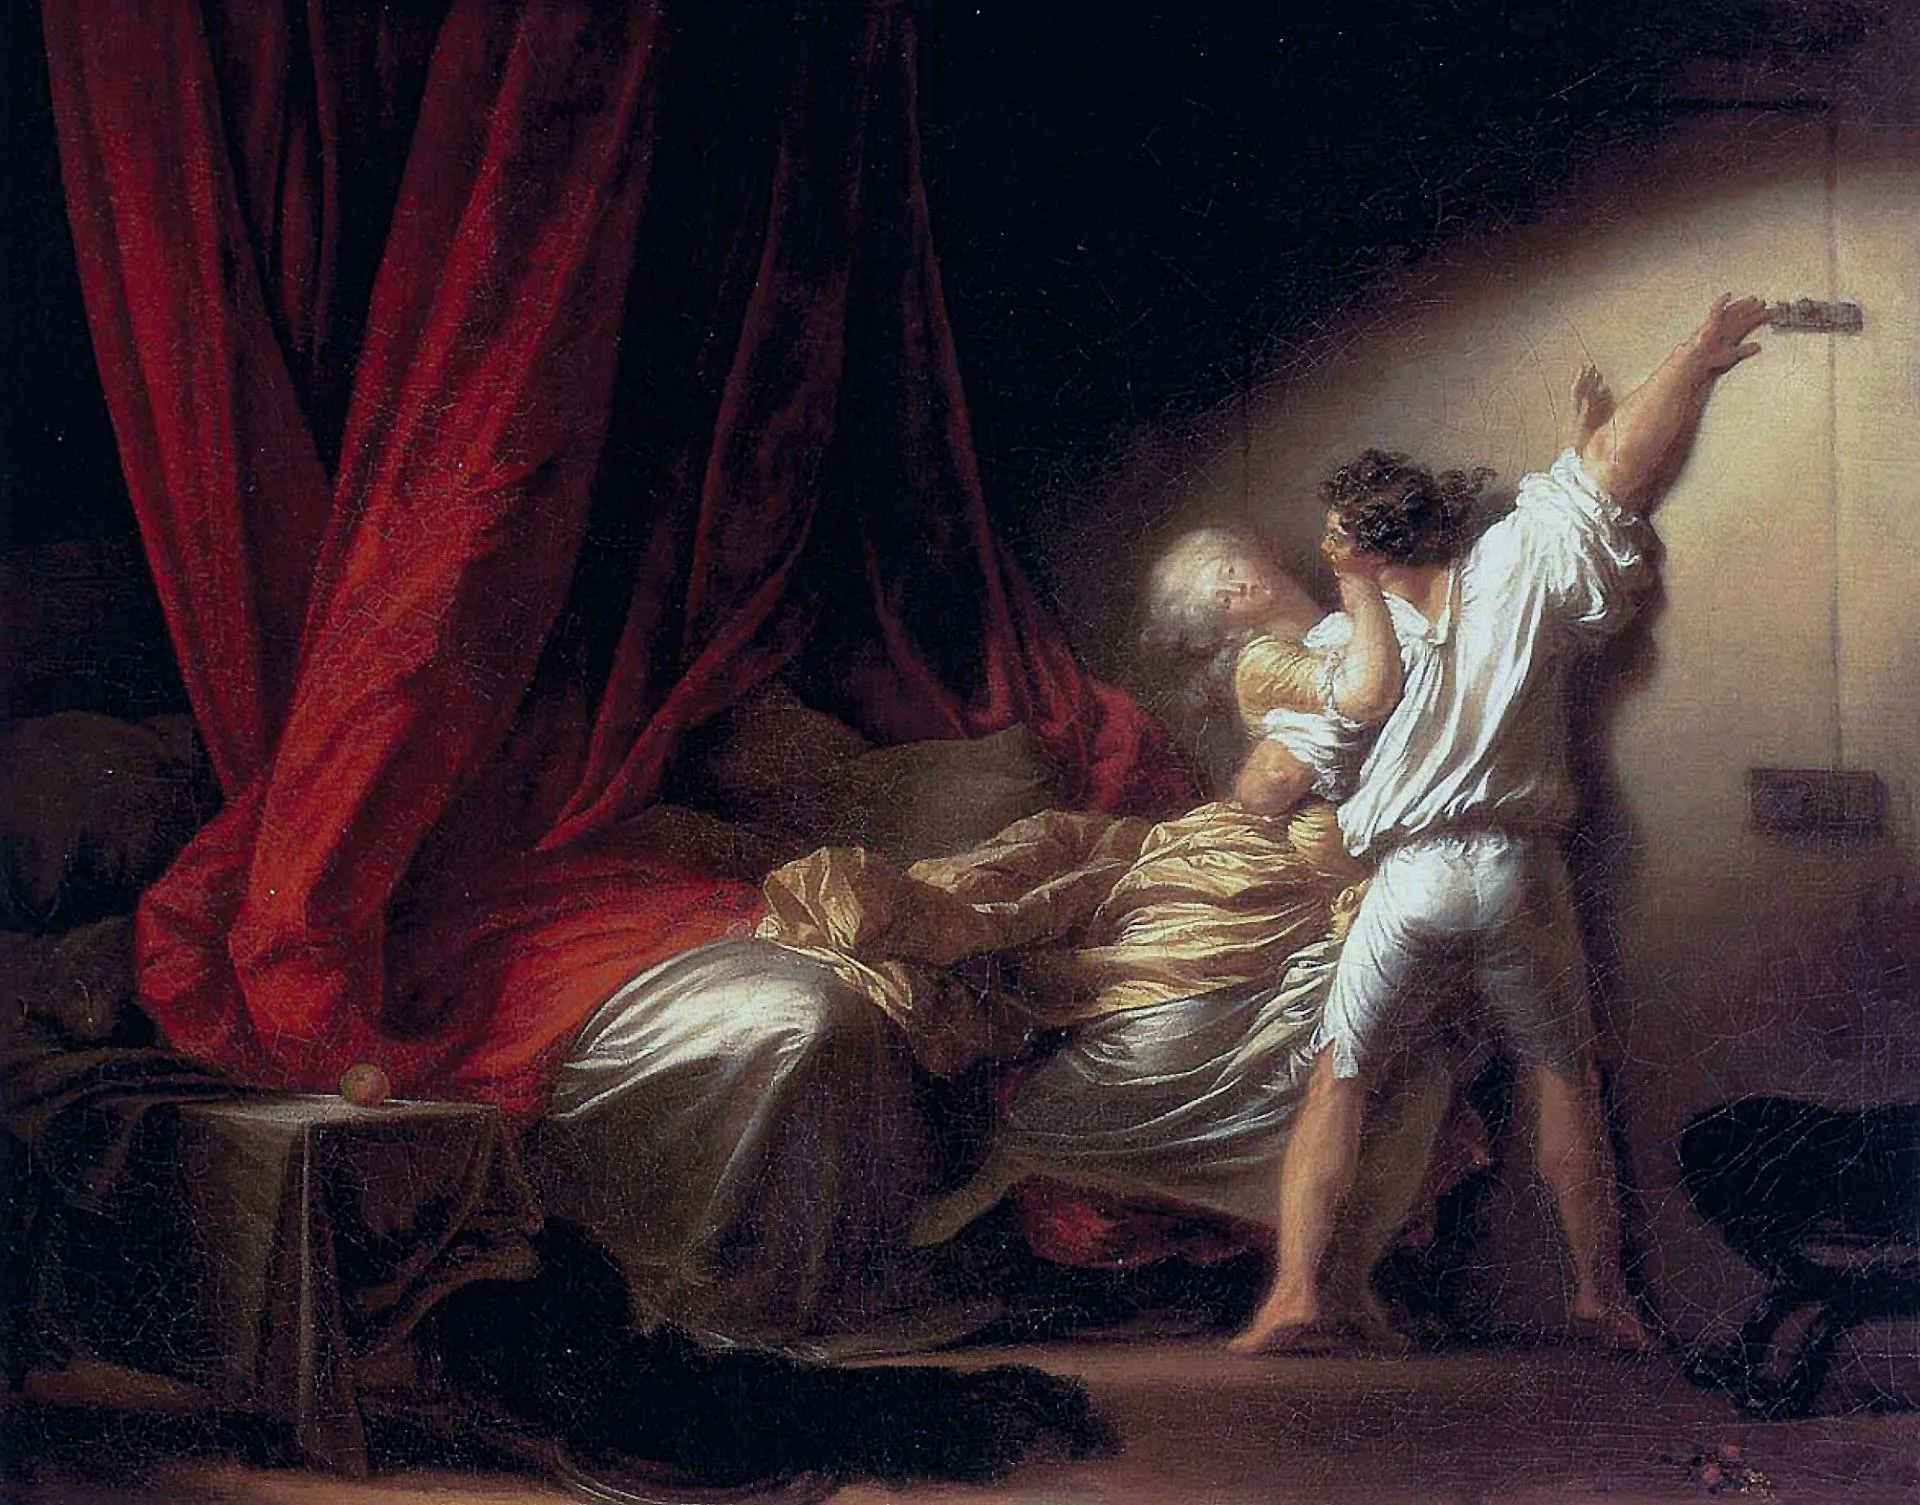 Jean‑Honoré Fragonard, Le Verrou, 1774 - 1778,
huile sur toile, 73 × 93 cm, musée du Louvre, Paris.